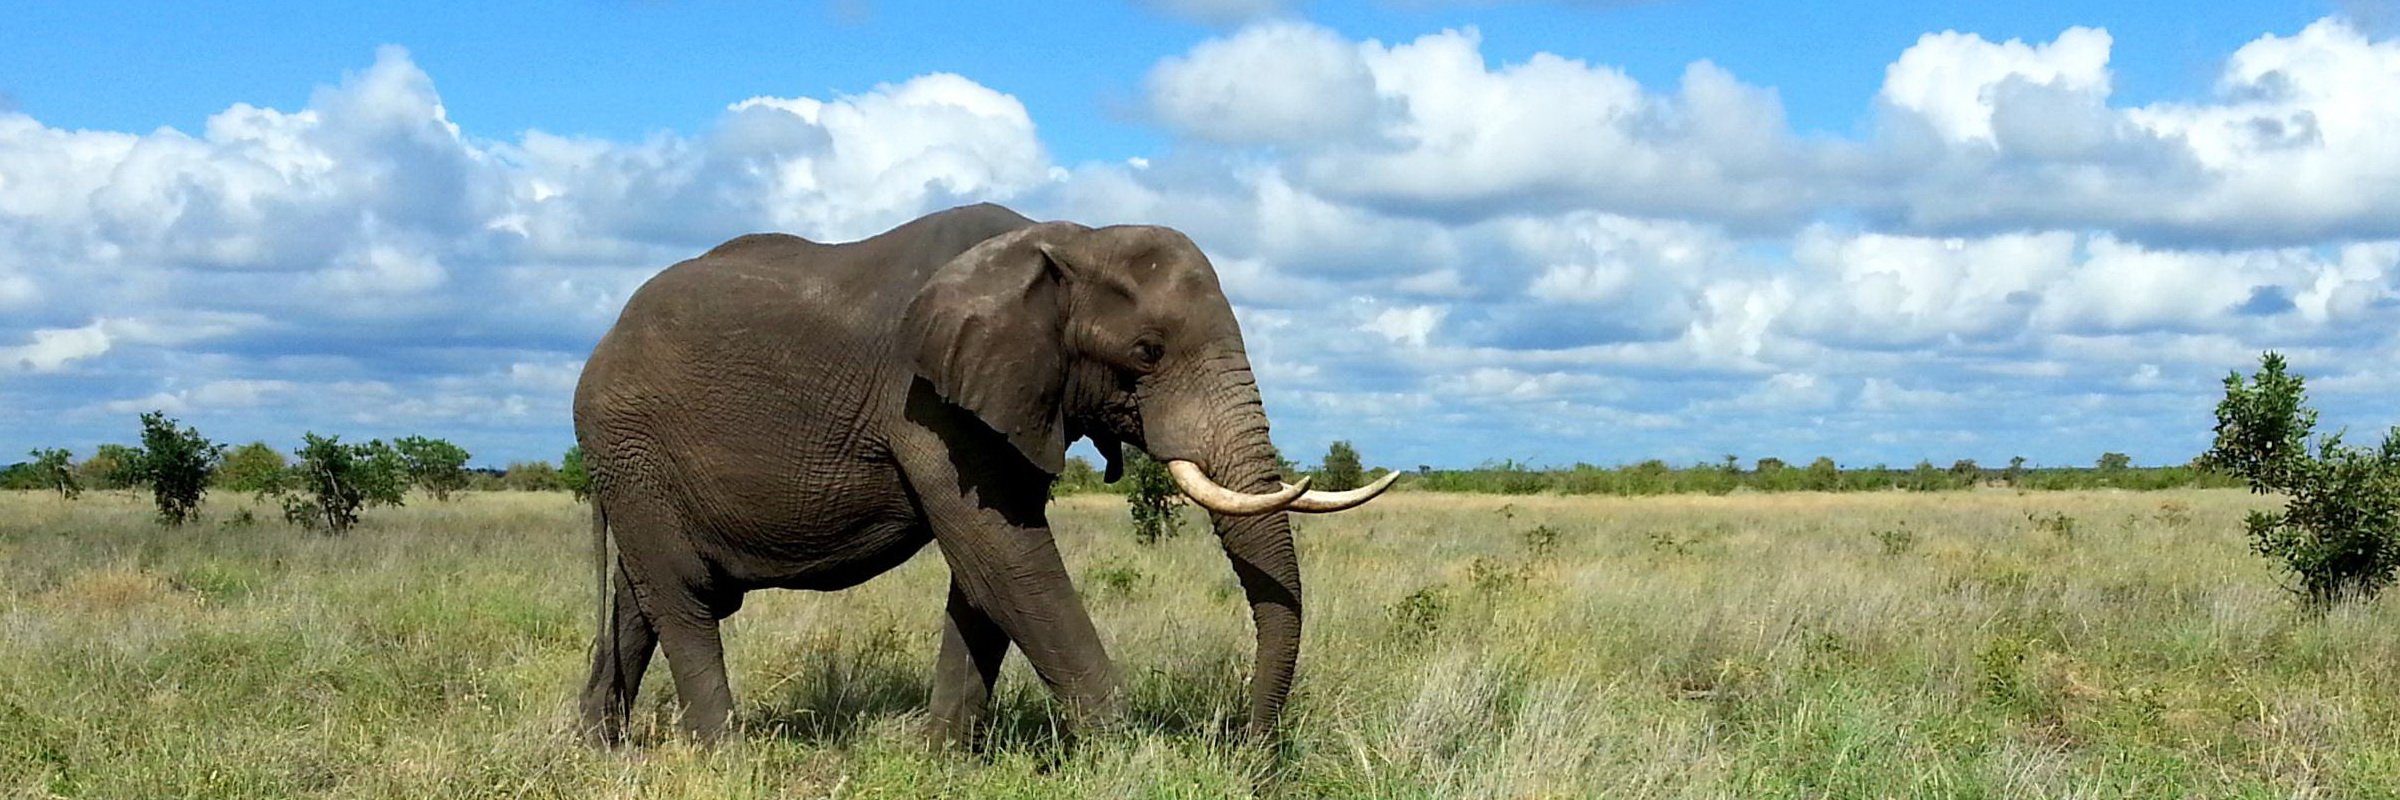 Afrikanische Elefanten sind in den weitgehend offenen Landschaften Afrikas, südlich der Sahara beheimatet.